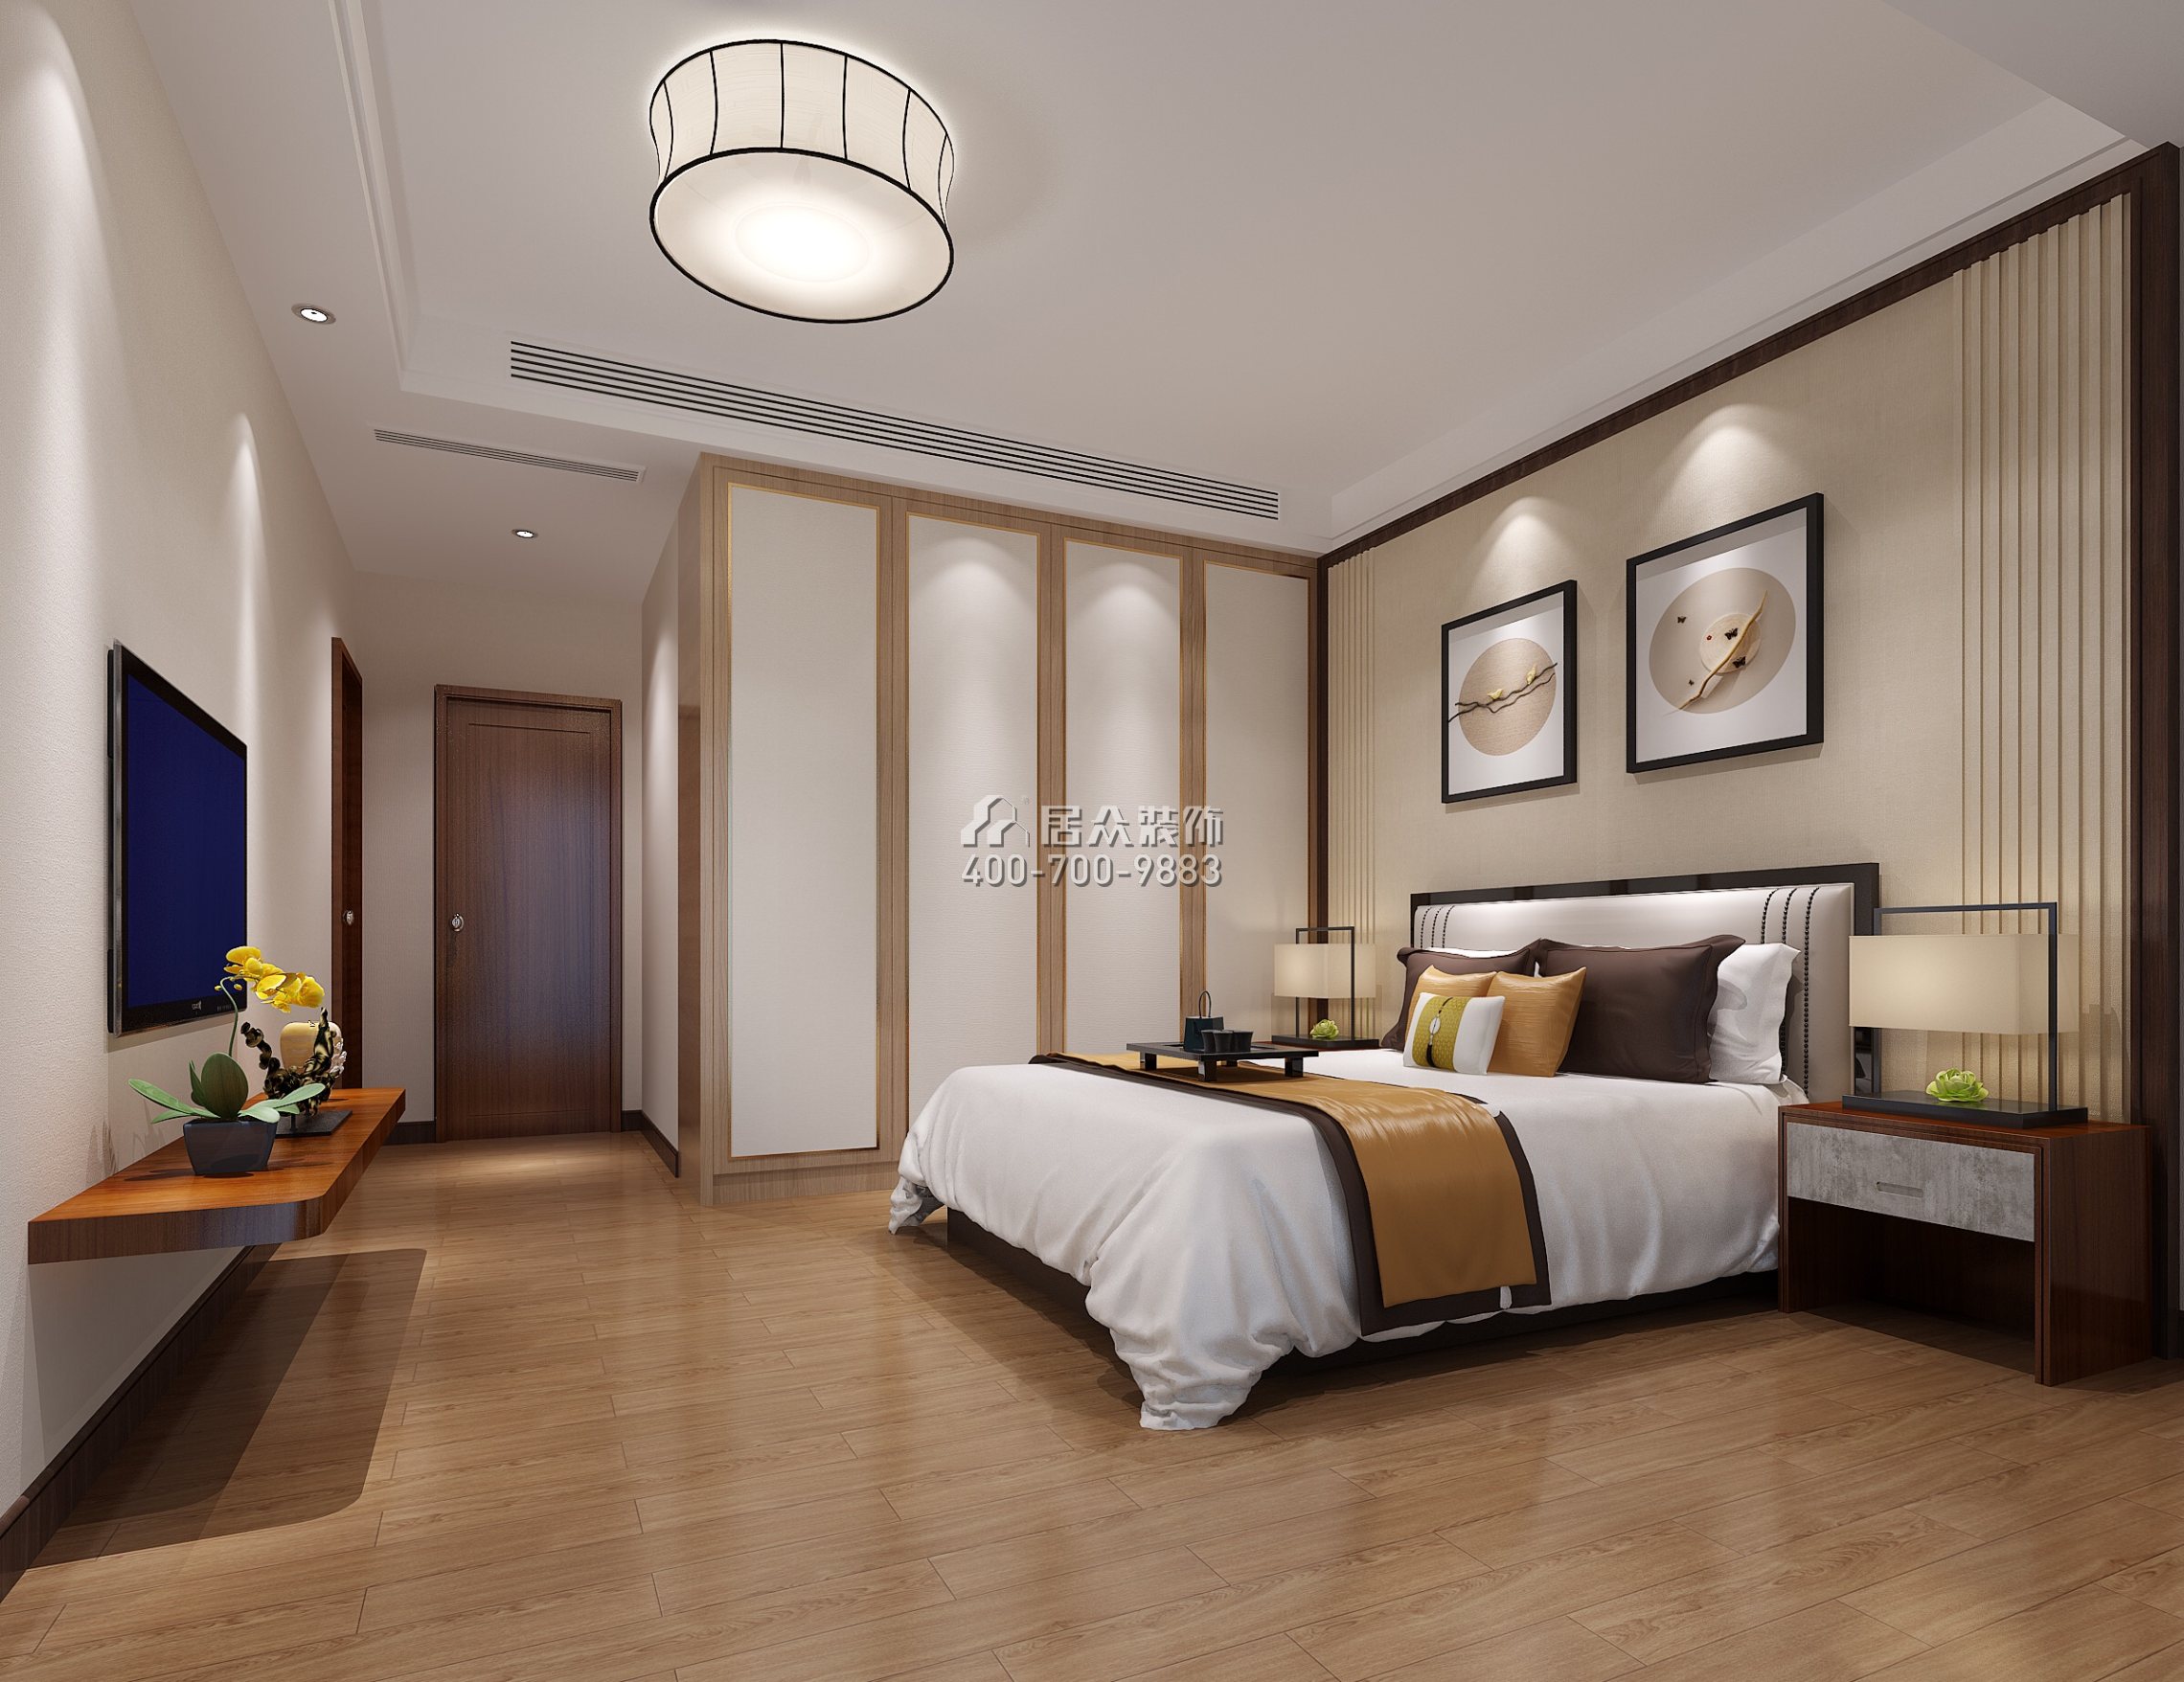 廣州華發四季144平方米中式風格平層戶型臥室裝修效果圖